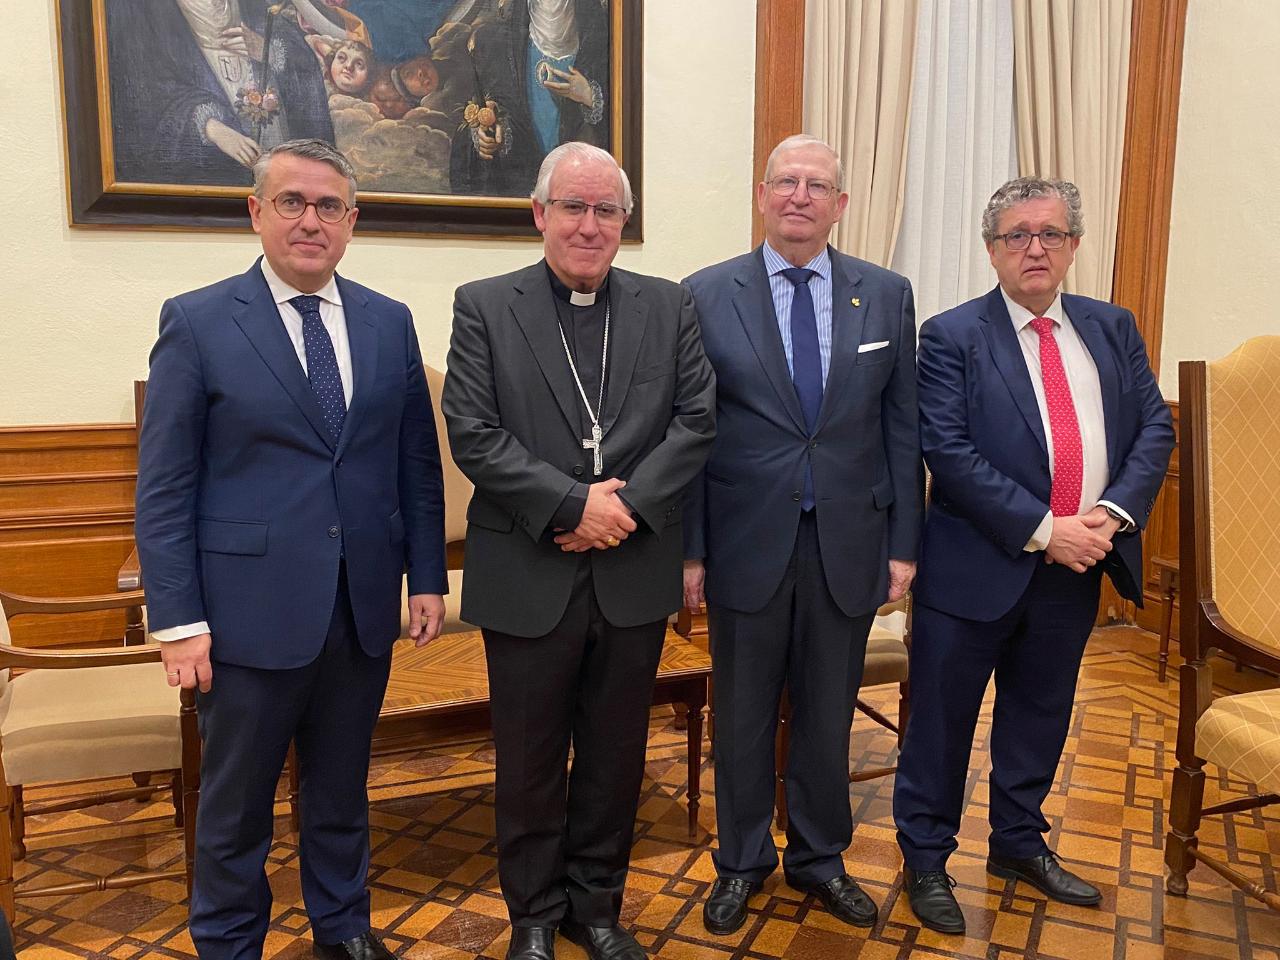 Valoración del convenio con UMAS del Arzobispo de Sevilla Don José Ángel Sáiz Meneses